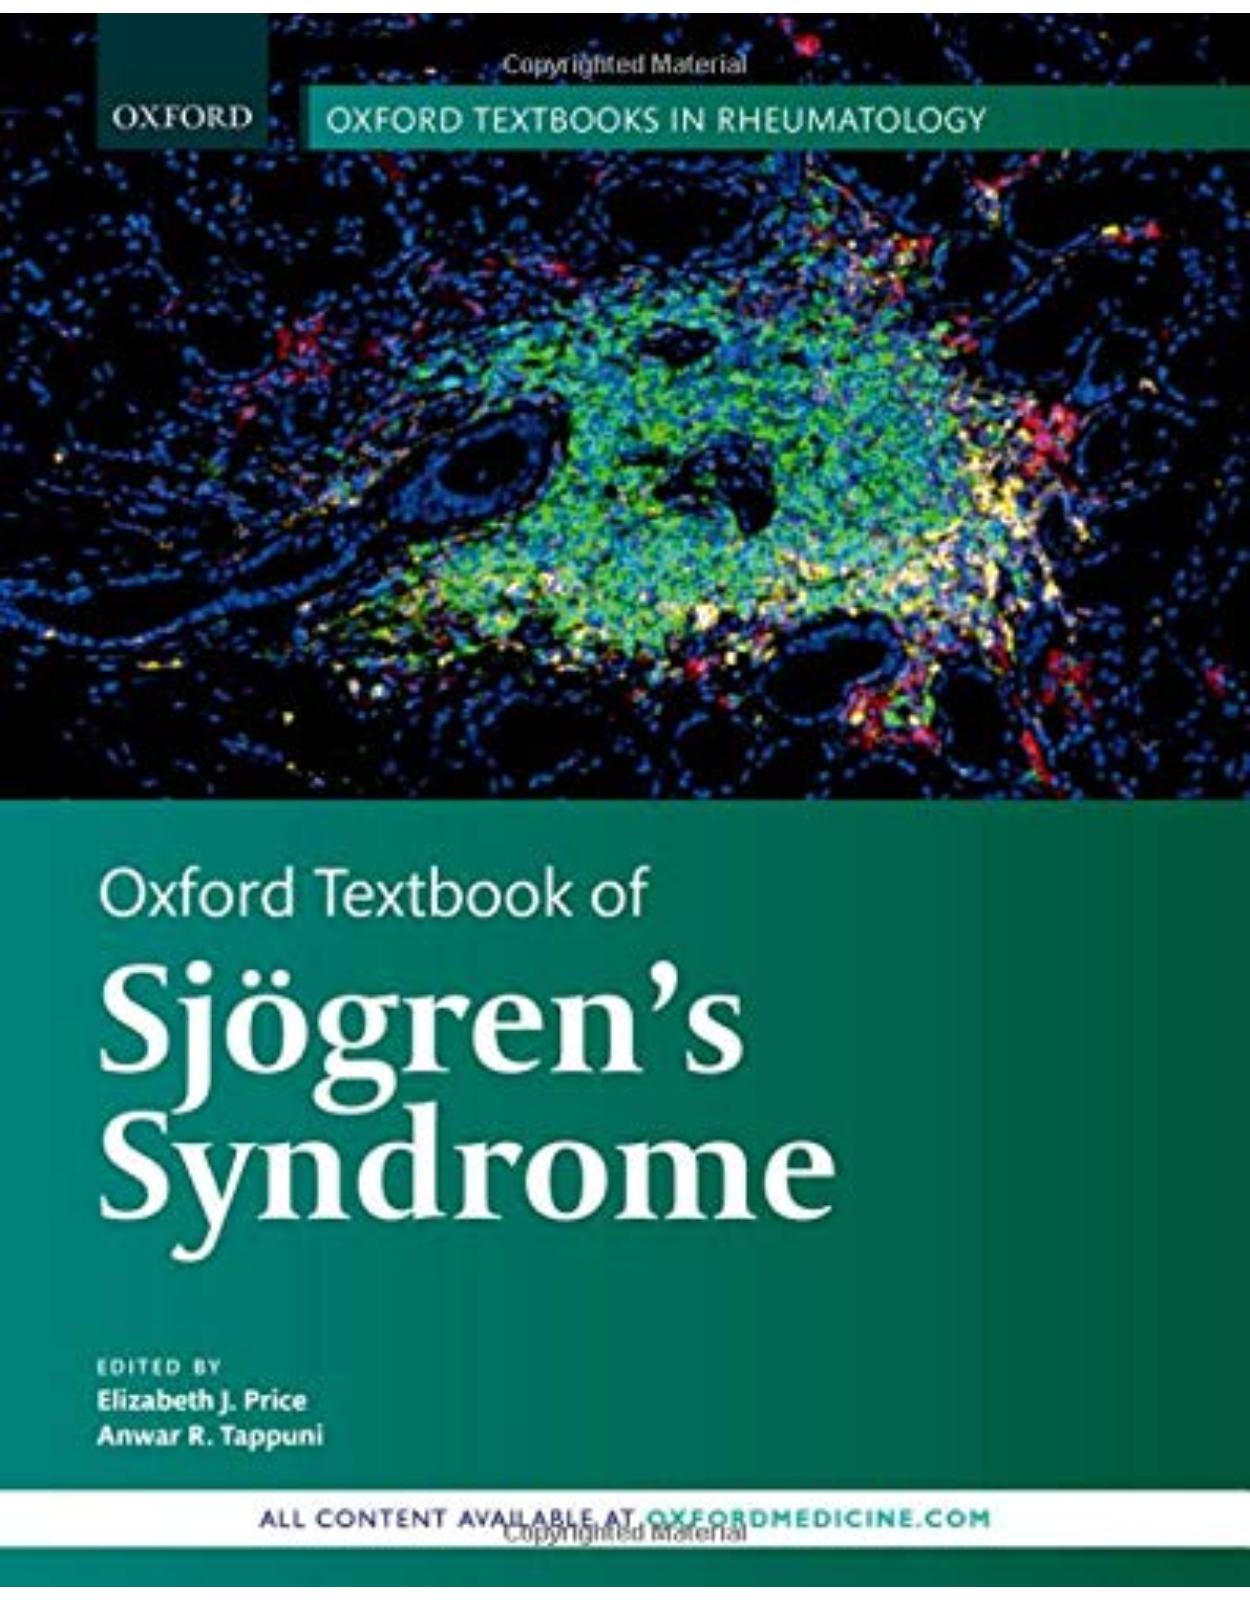 Oxford Textbook of Sjögren's Syndrome (Oxford Textbooks in Rheumatology)